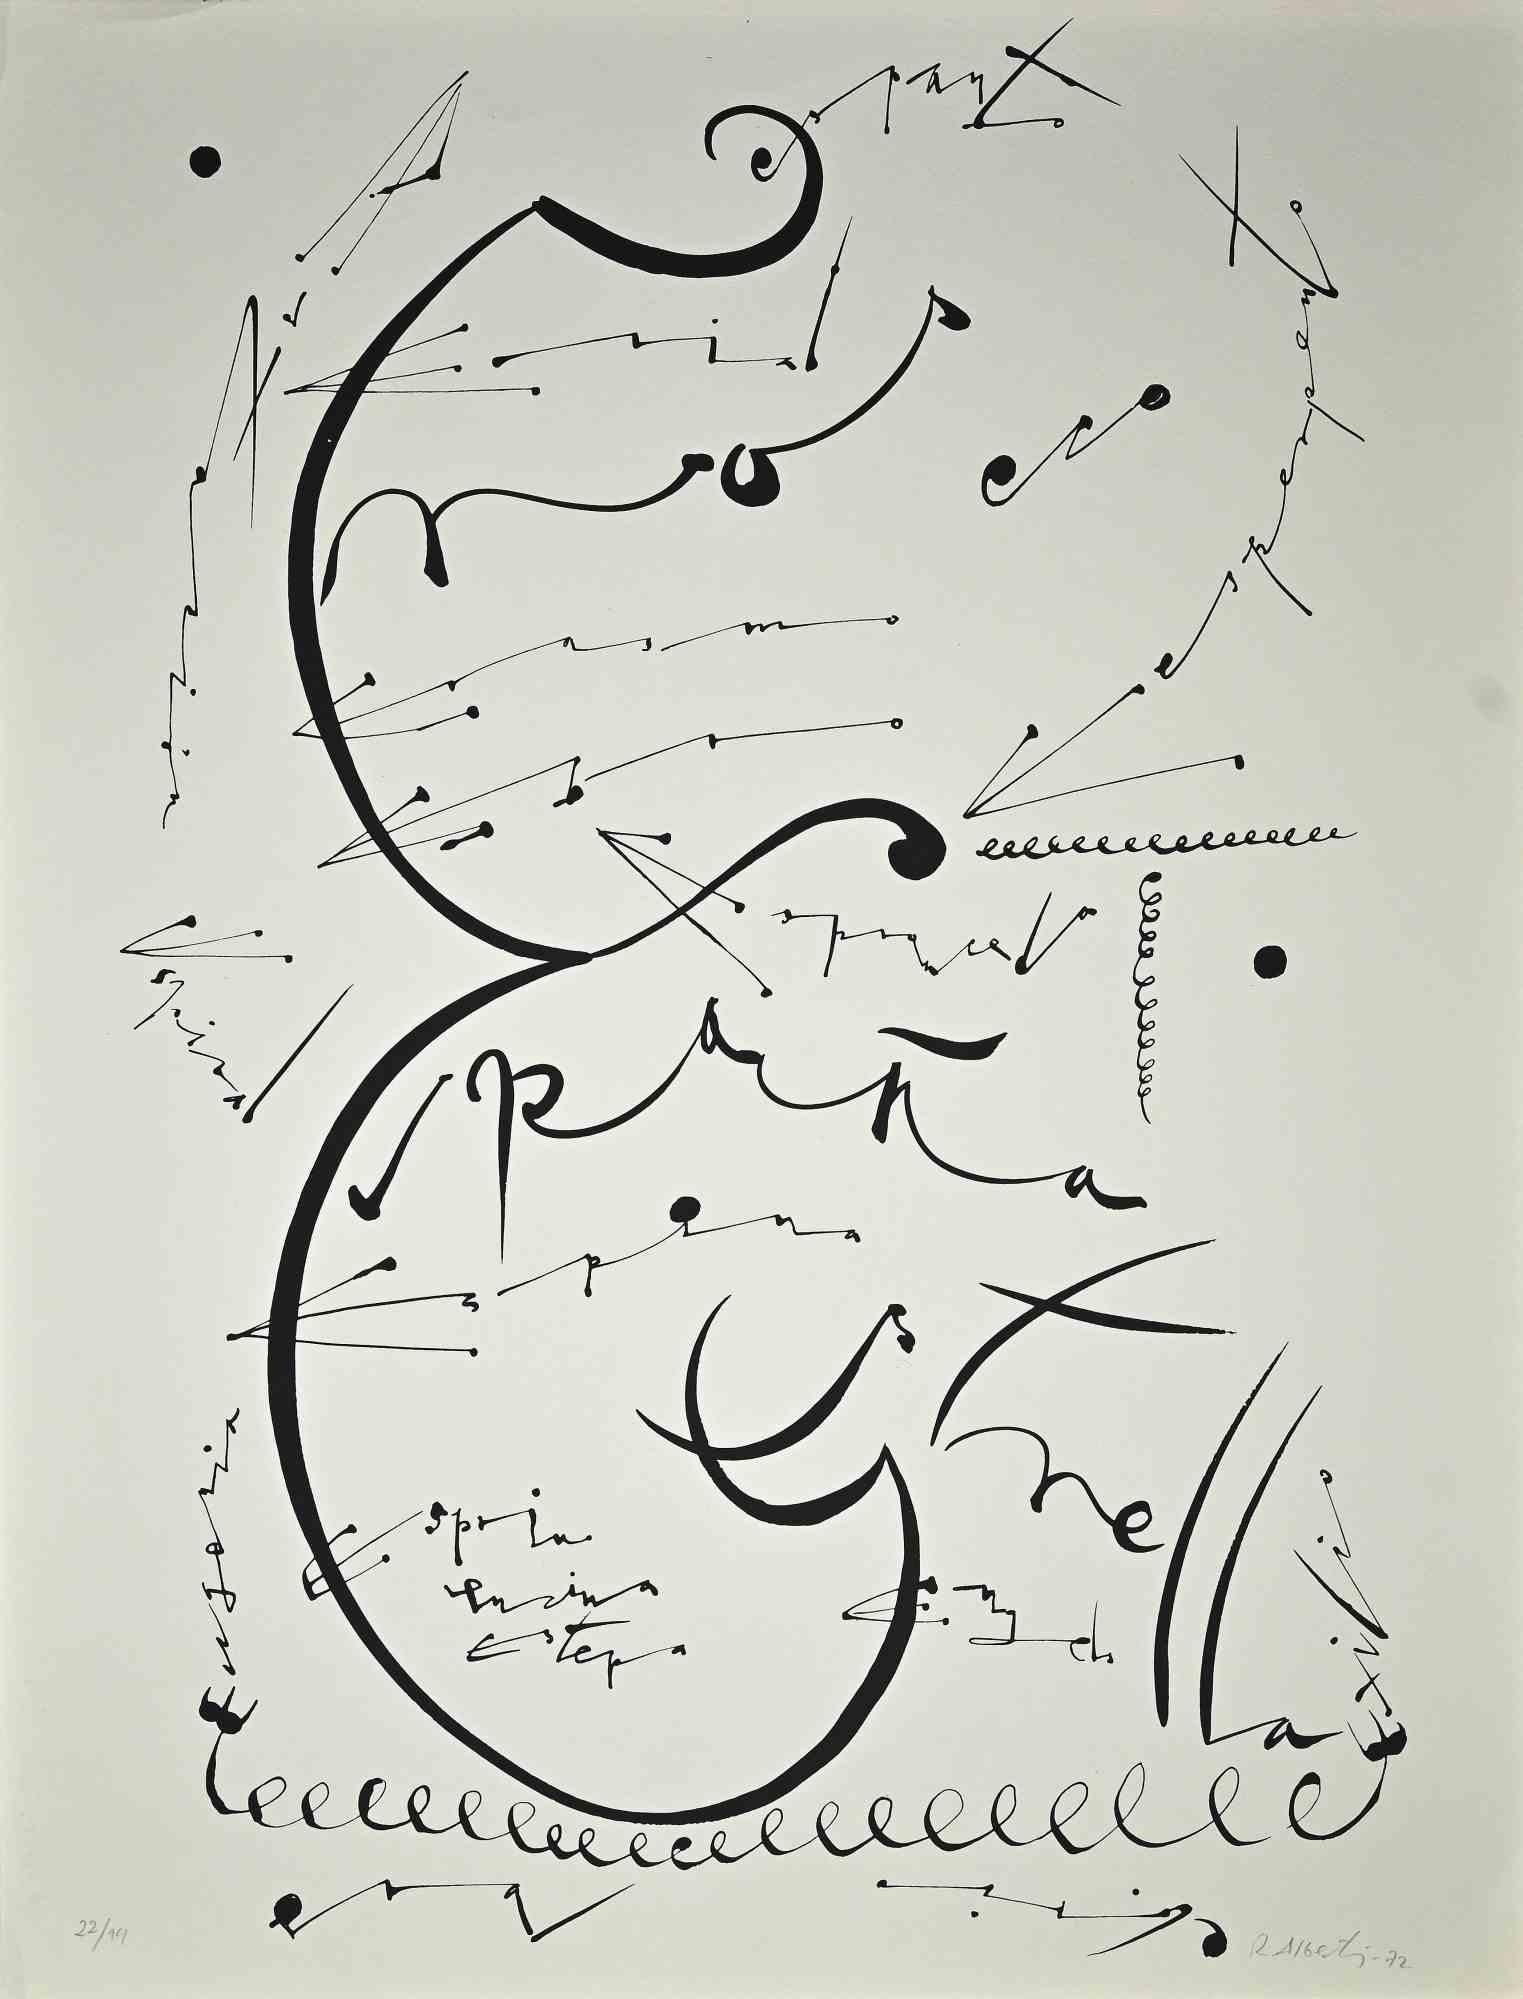 Letter E - Original Lithograph by Raphael Alberti - 1972